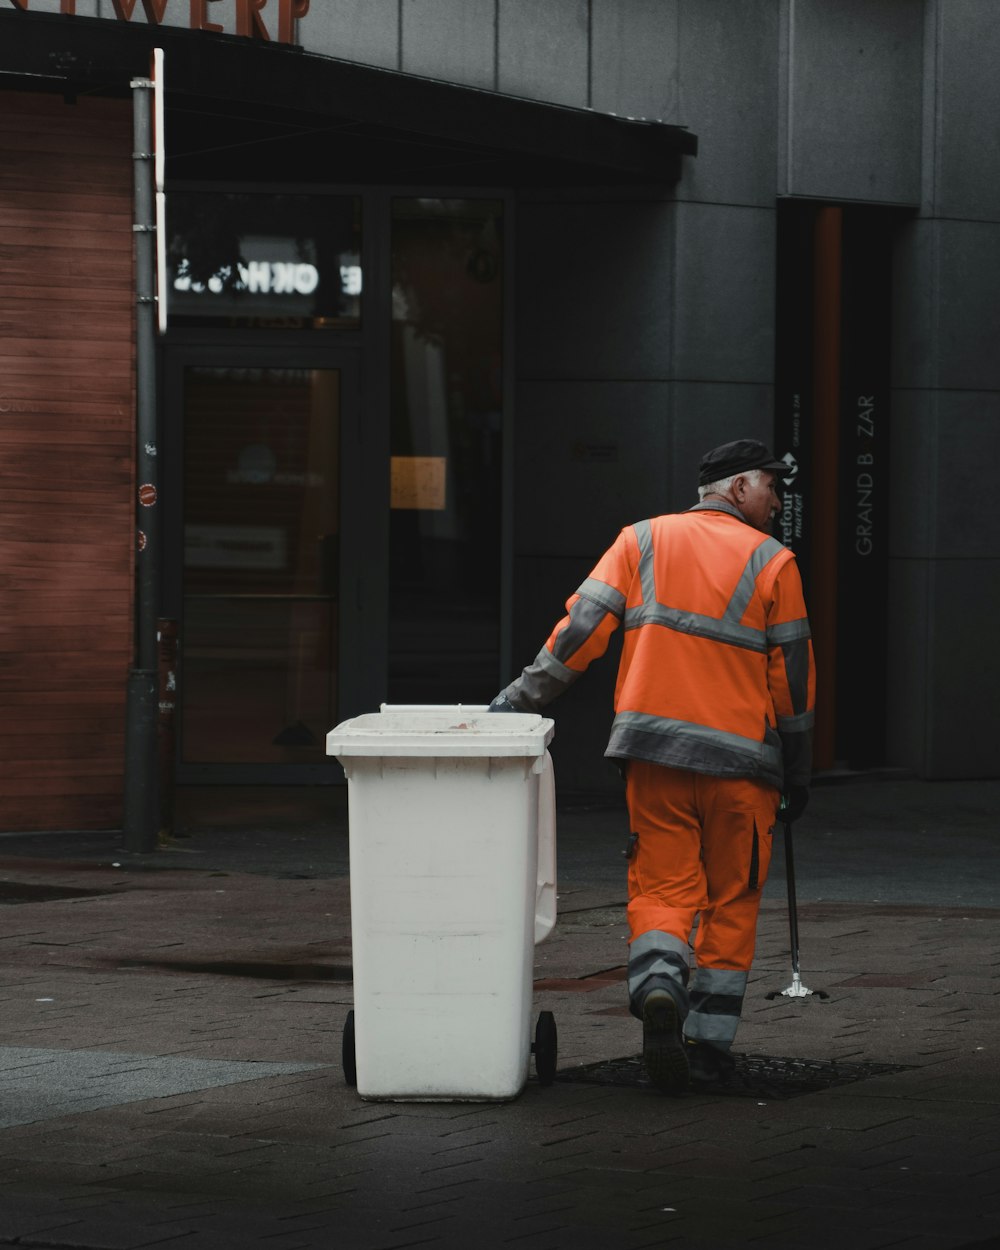 주황색 재킷과 검은 바지를 입은 남자가 흰색 플라스틱 쓰레기통 옆에 서 있다